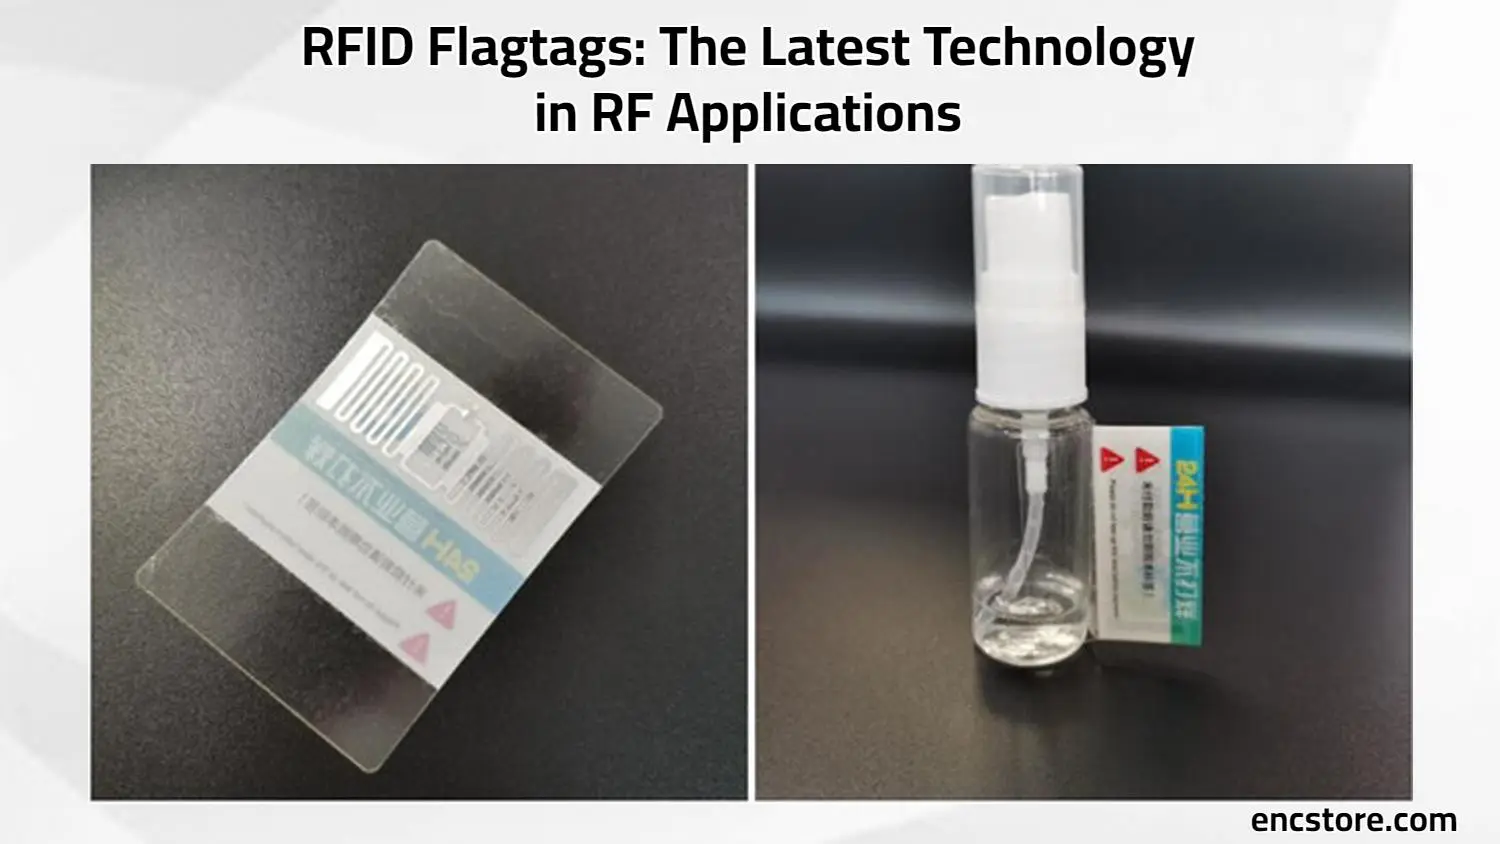 RFID Flagtags